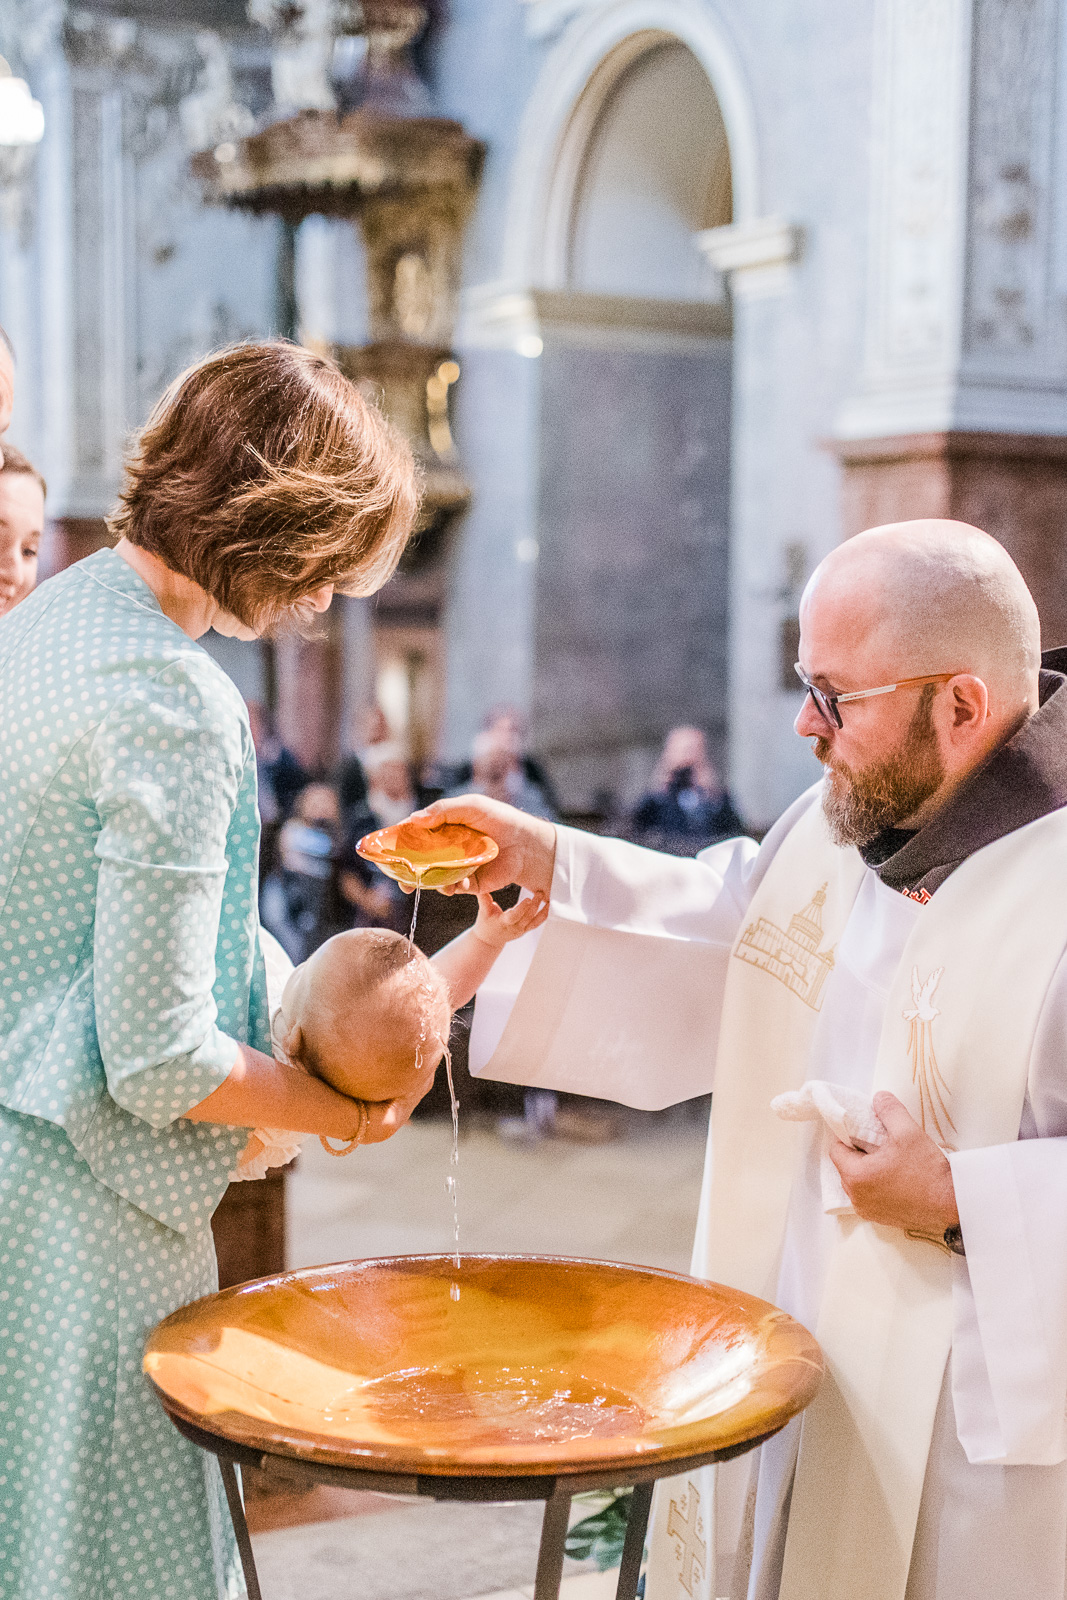 Ein Baby wird getauft